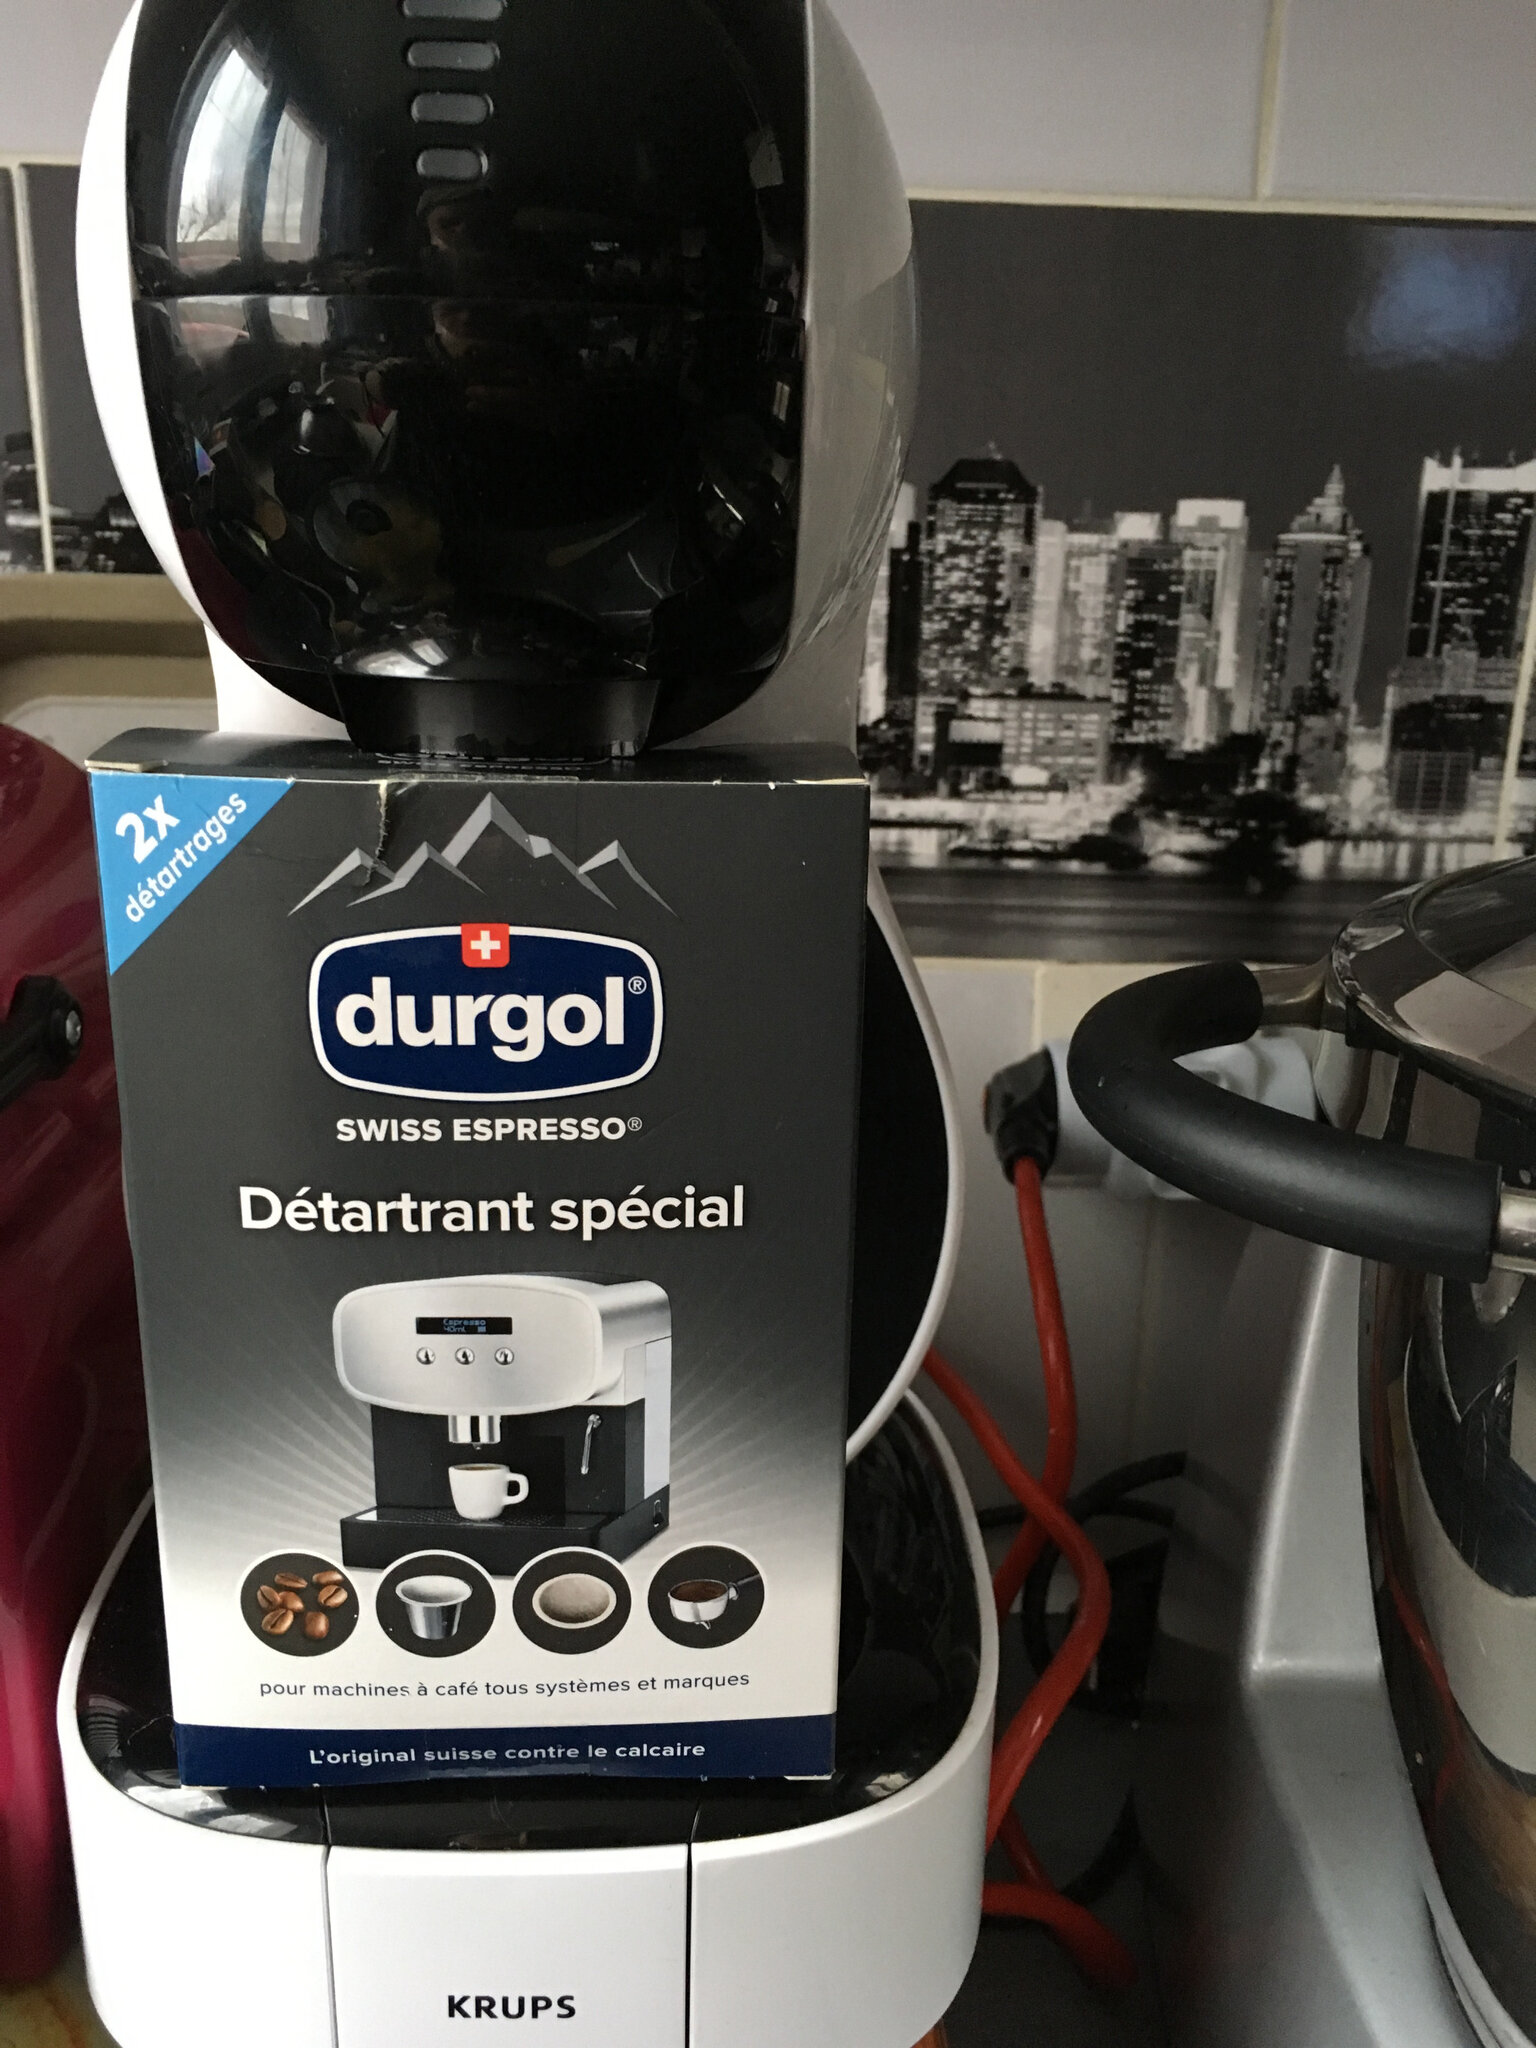 durgol swiss espresso, Détartrant spécial pour toutes les machines à café